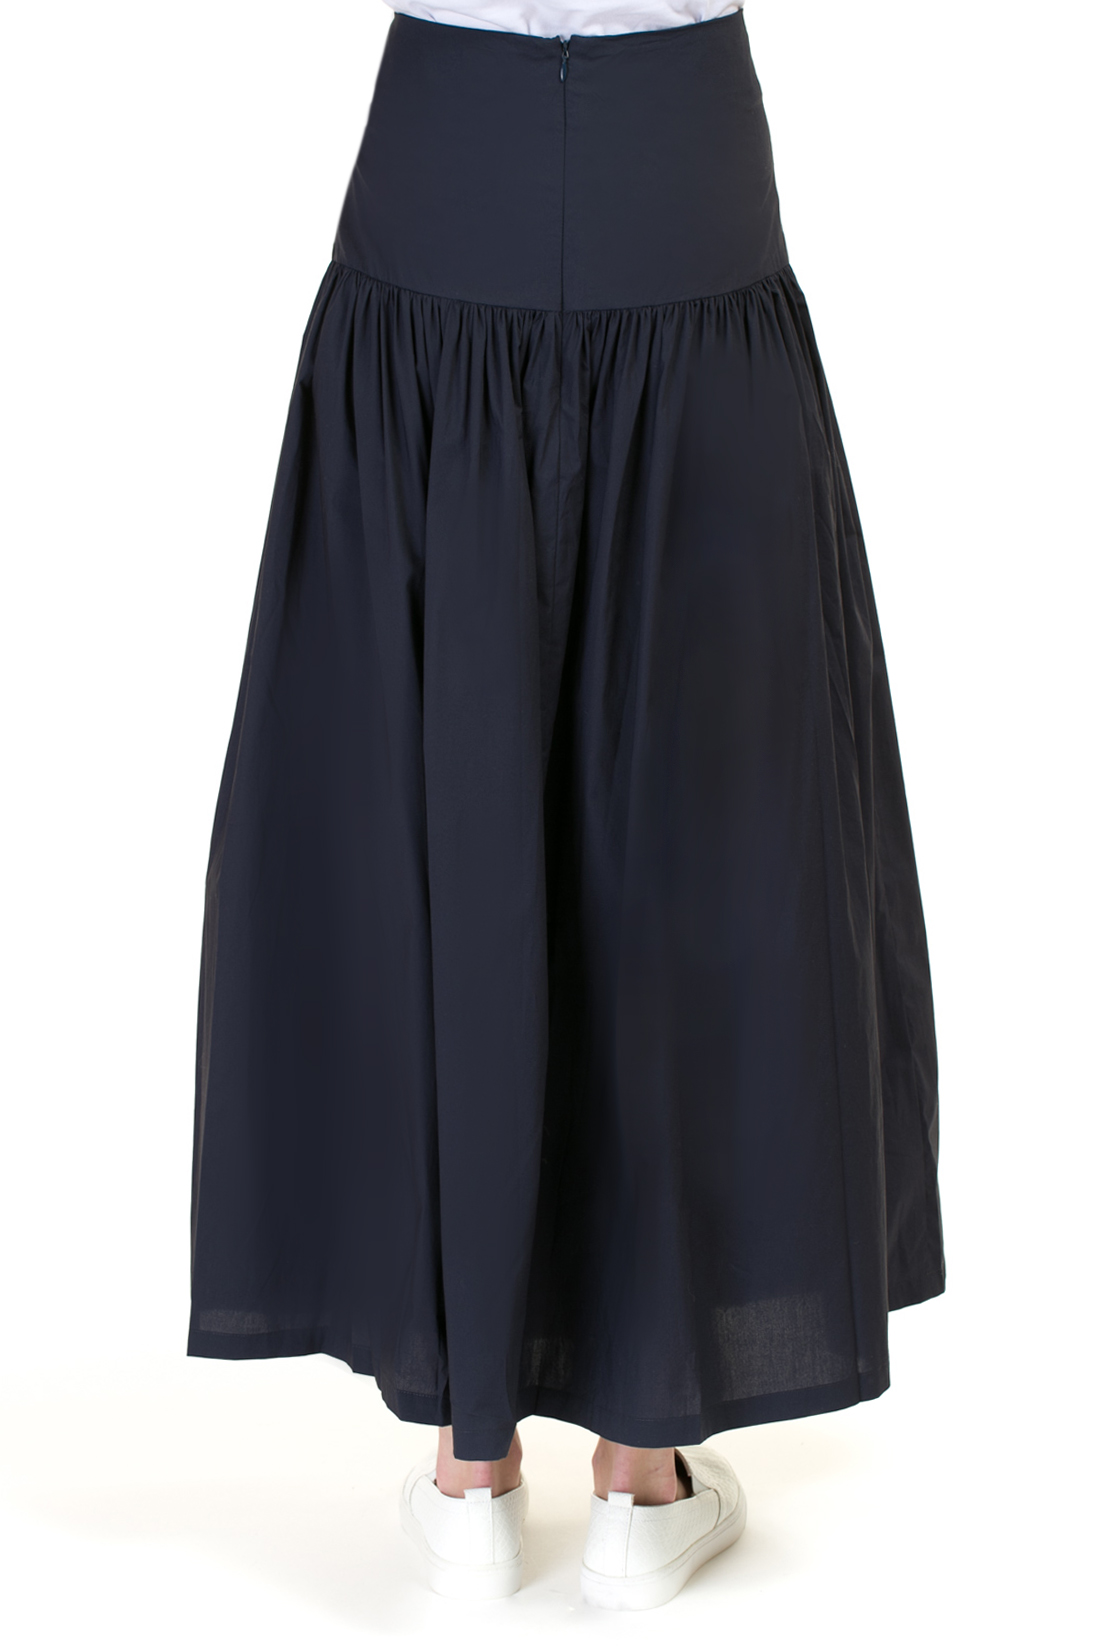 Длинная юбка с кокеткой (арт. baon B477022), размер L, цвет синий Длинная юбка с кокеткой (арт. baon B477022) - фото 2